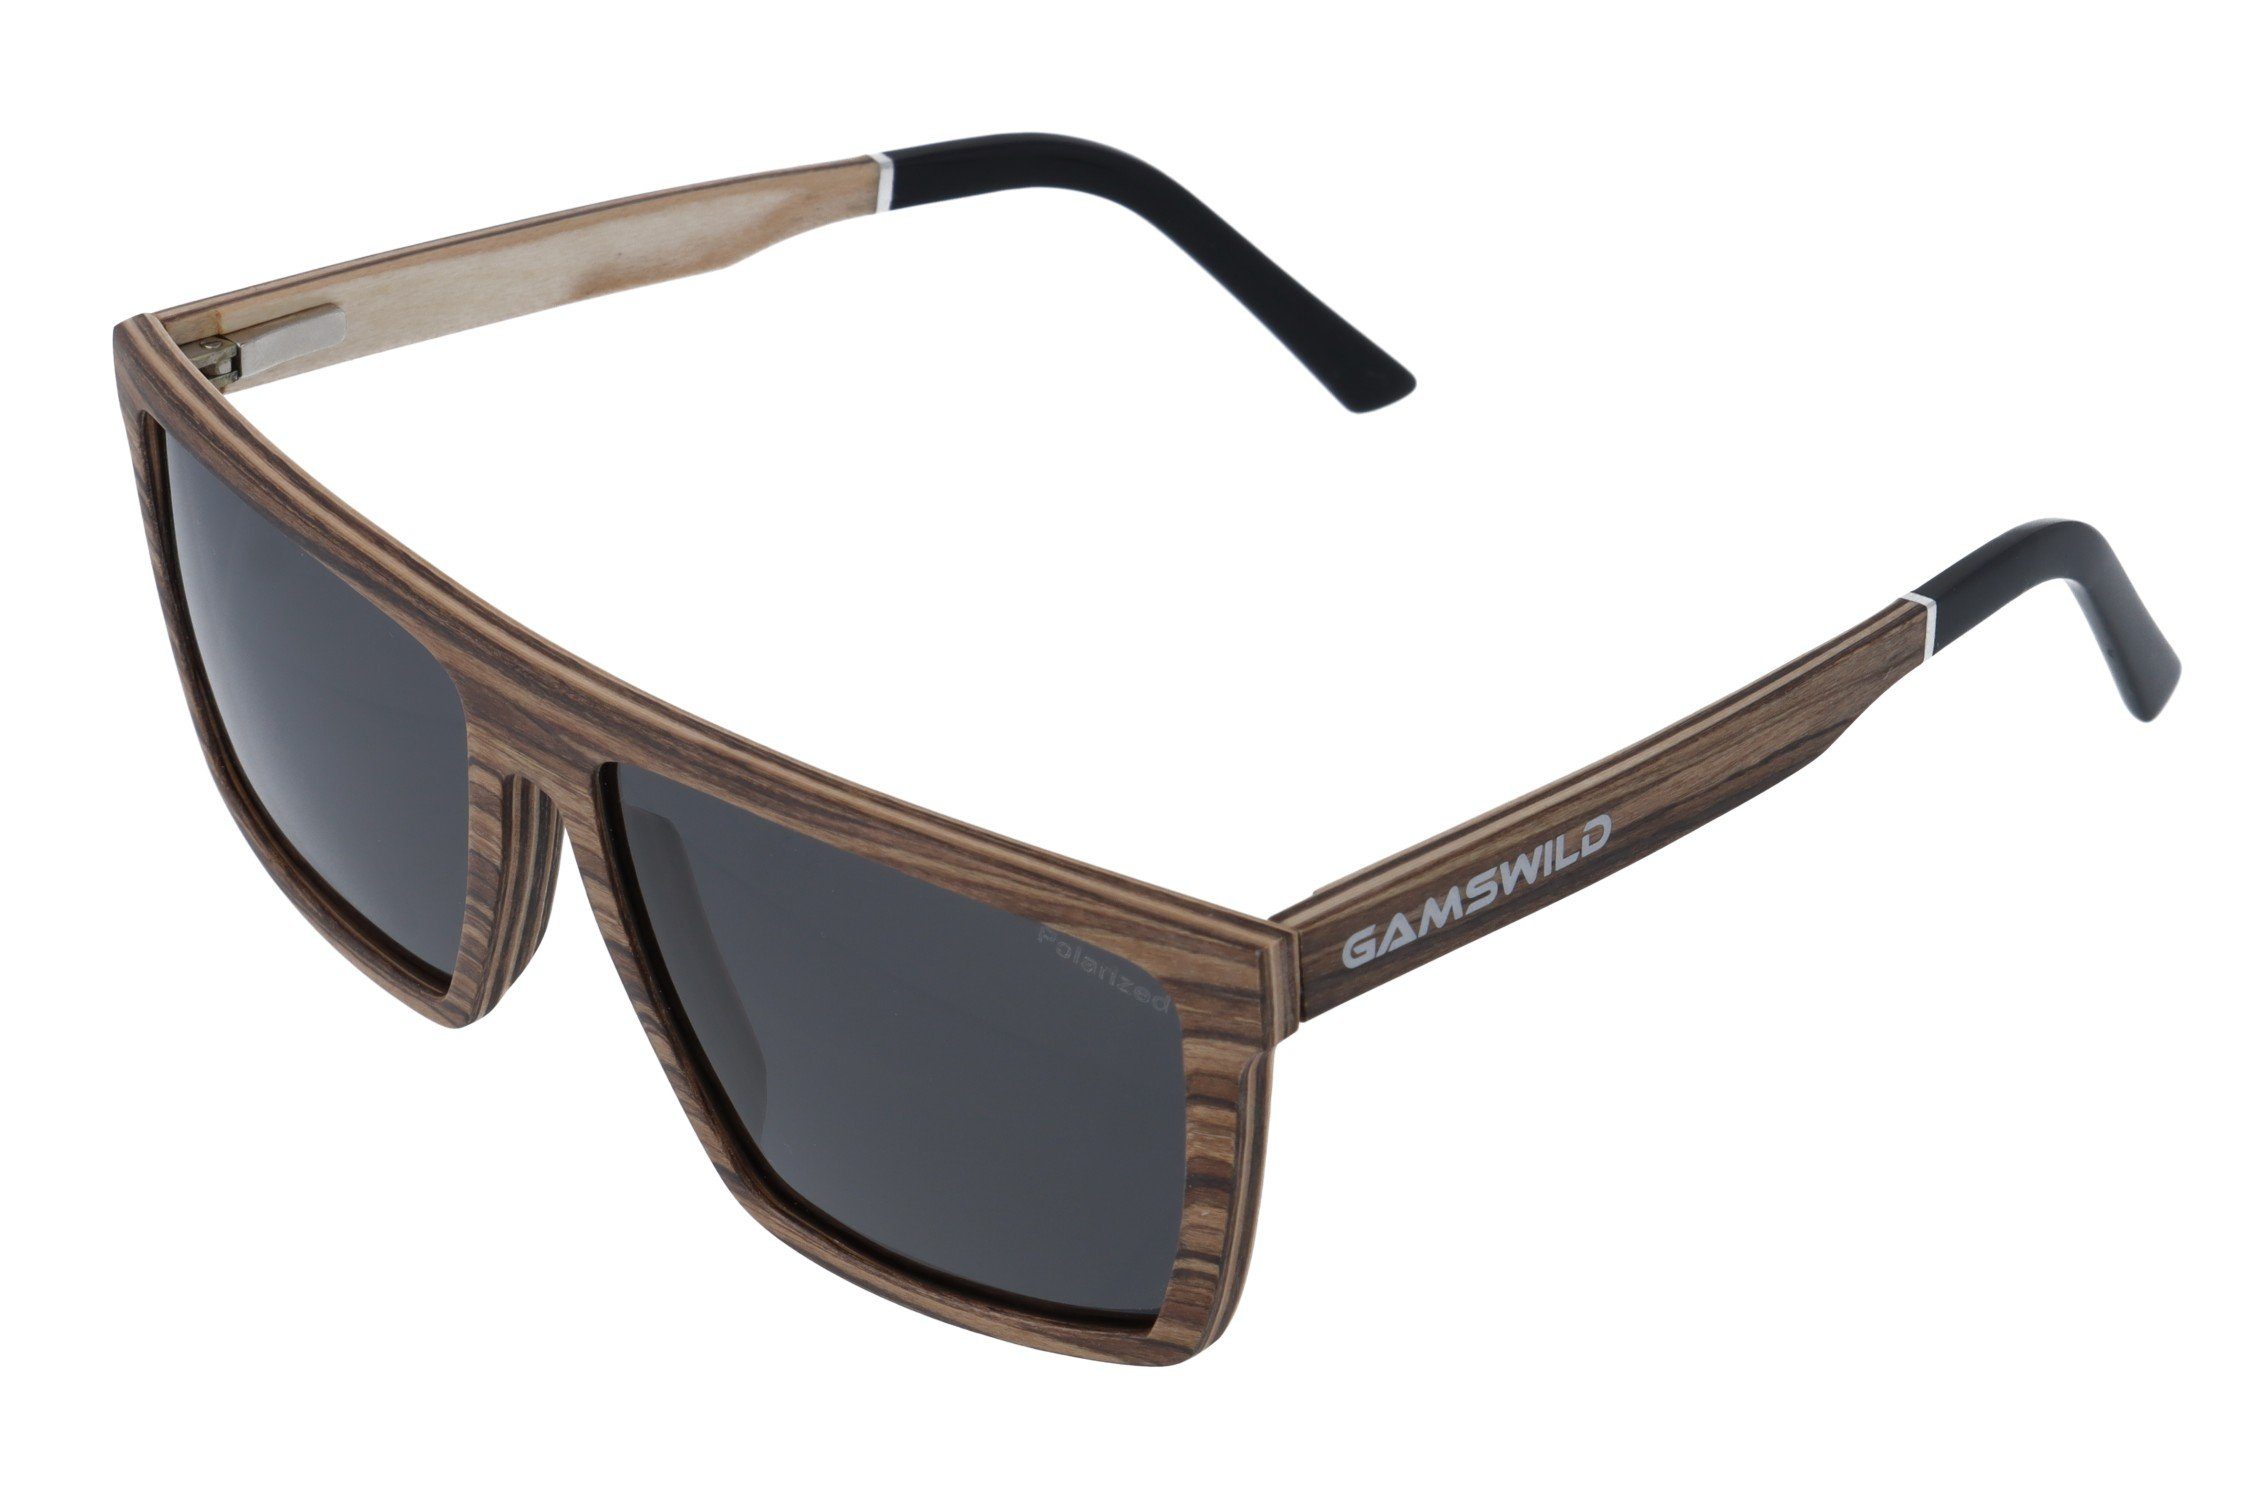 Gamswild Sonnenbrille WM0010 braun, Gläser Herren Damen GAMSSTYLE polarisierte schwarz Holzbrille Unisex